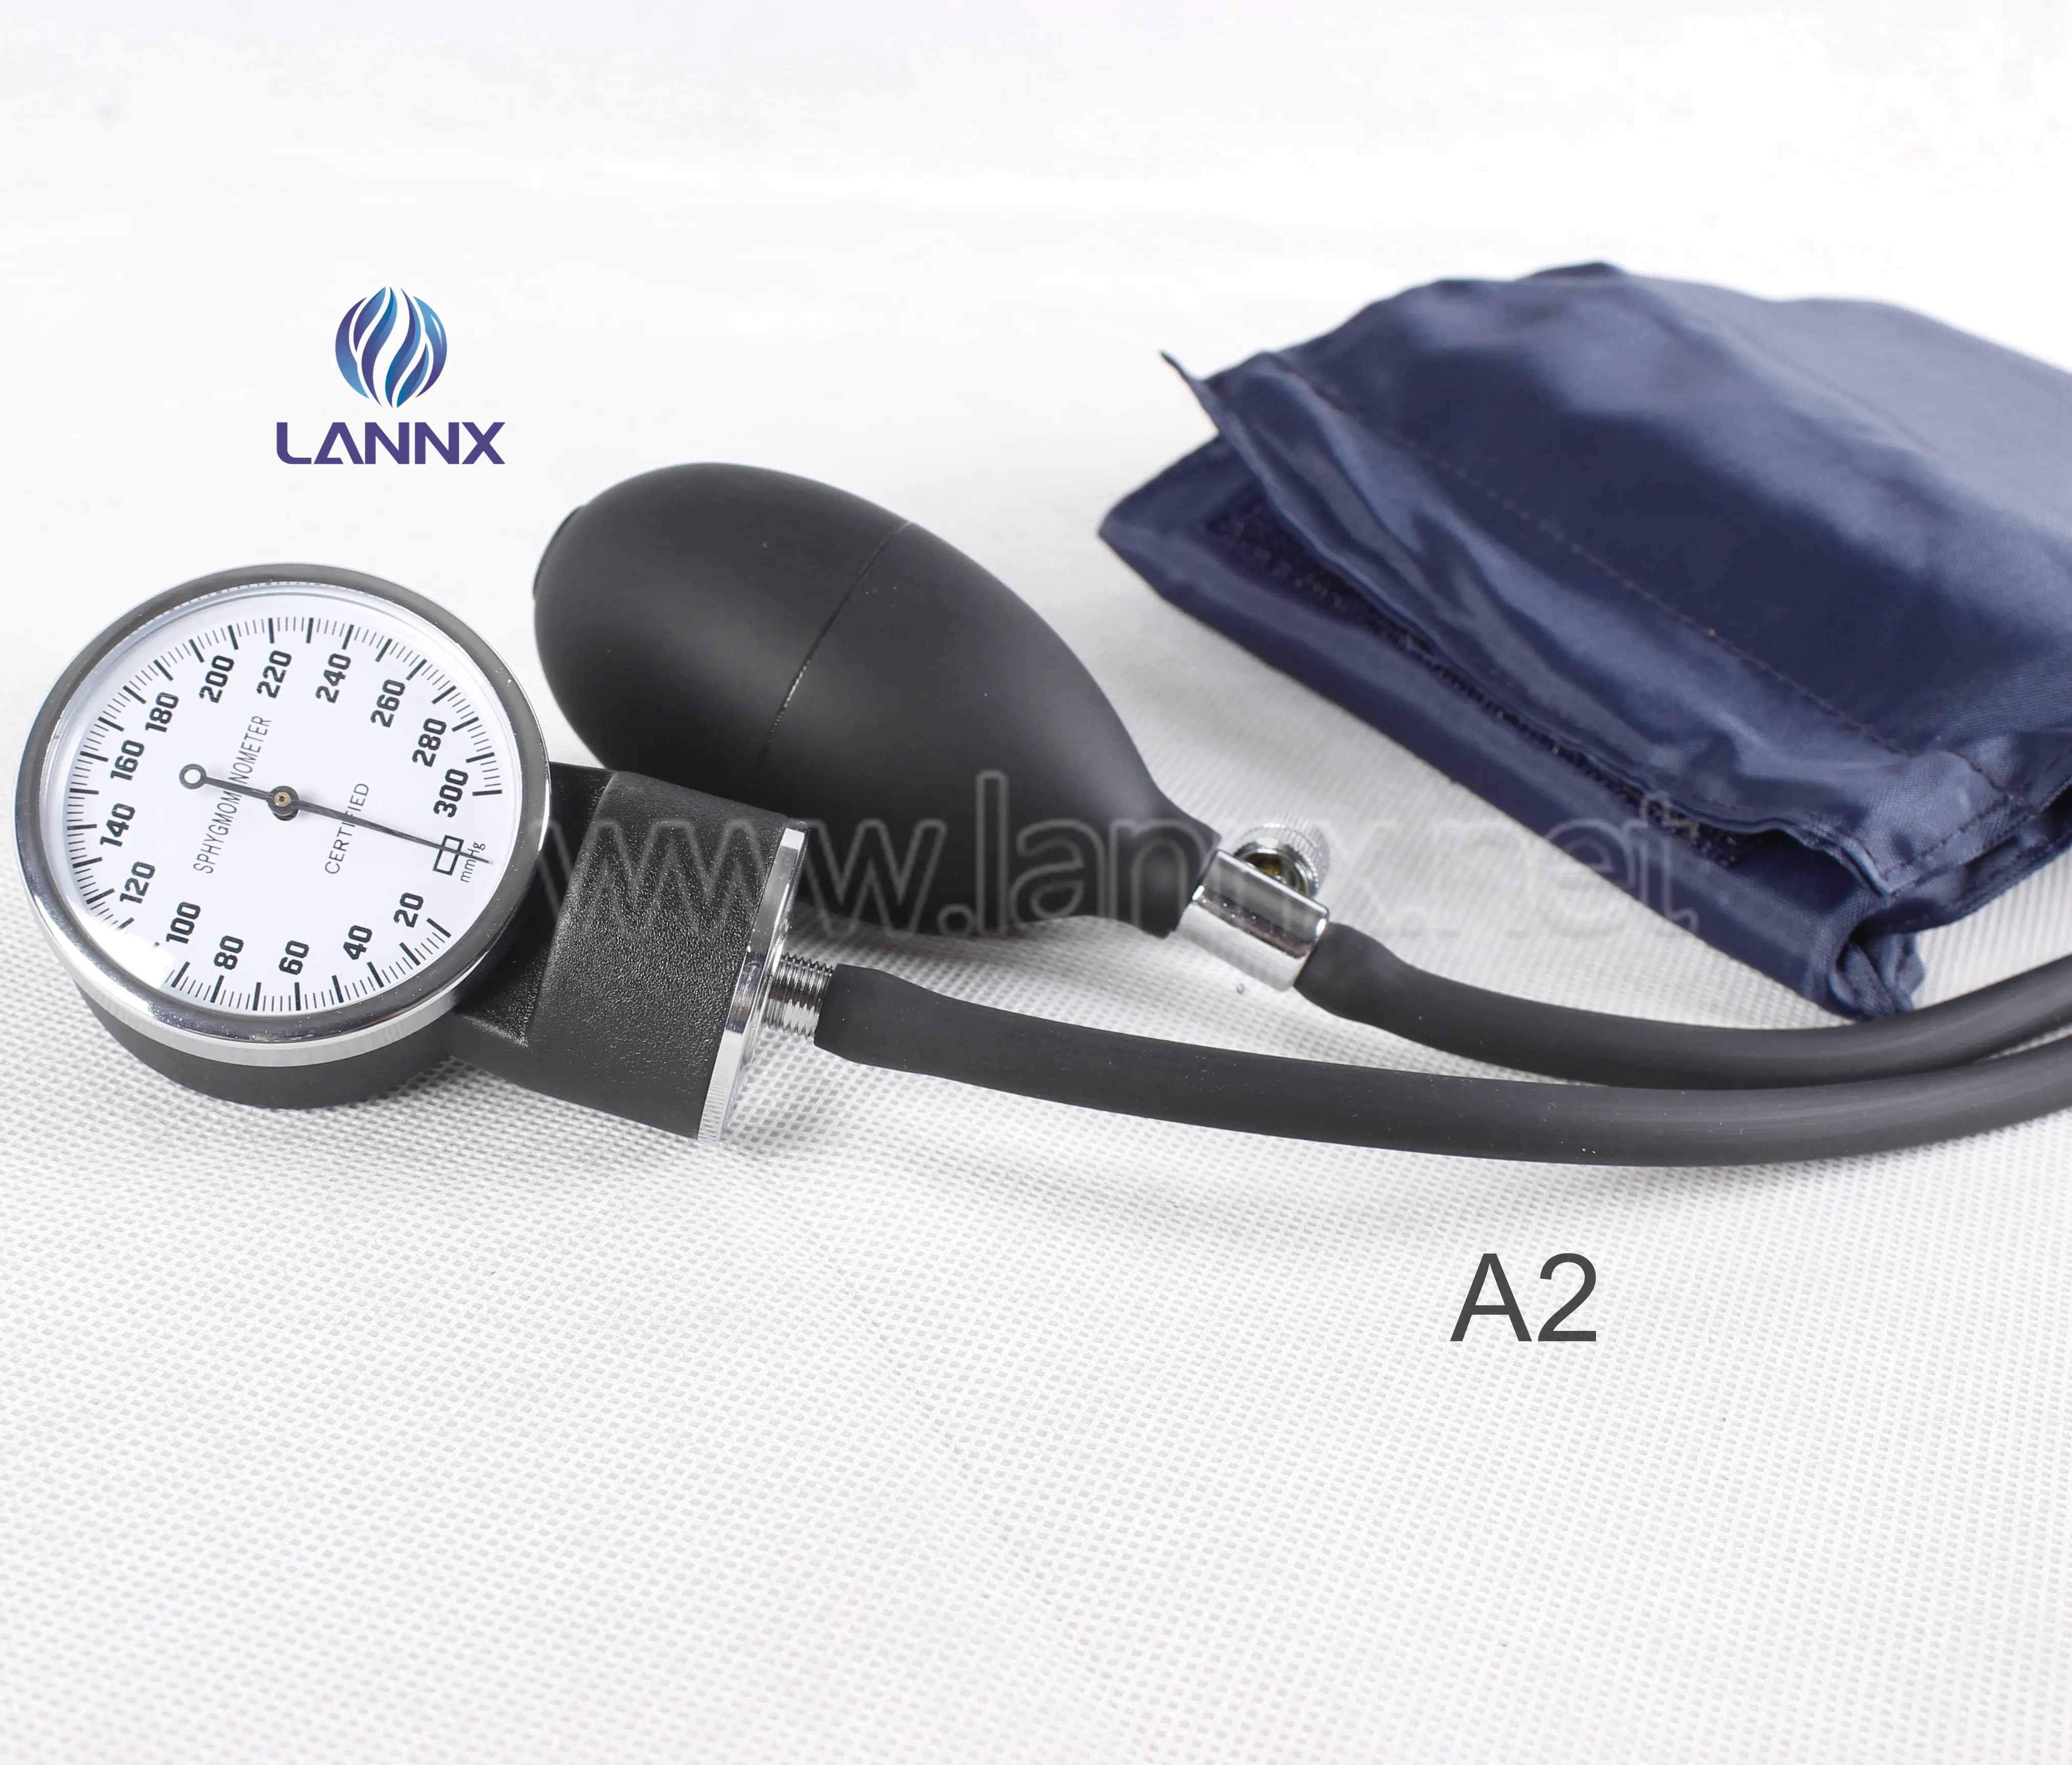 LANNX A2 Tensiometer Digital Monitor Tekanan Darah, Baru Stetoskop Aneroid Sphygmomanometer dengan Stetoskop